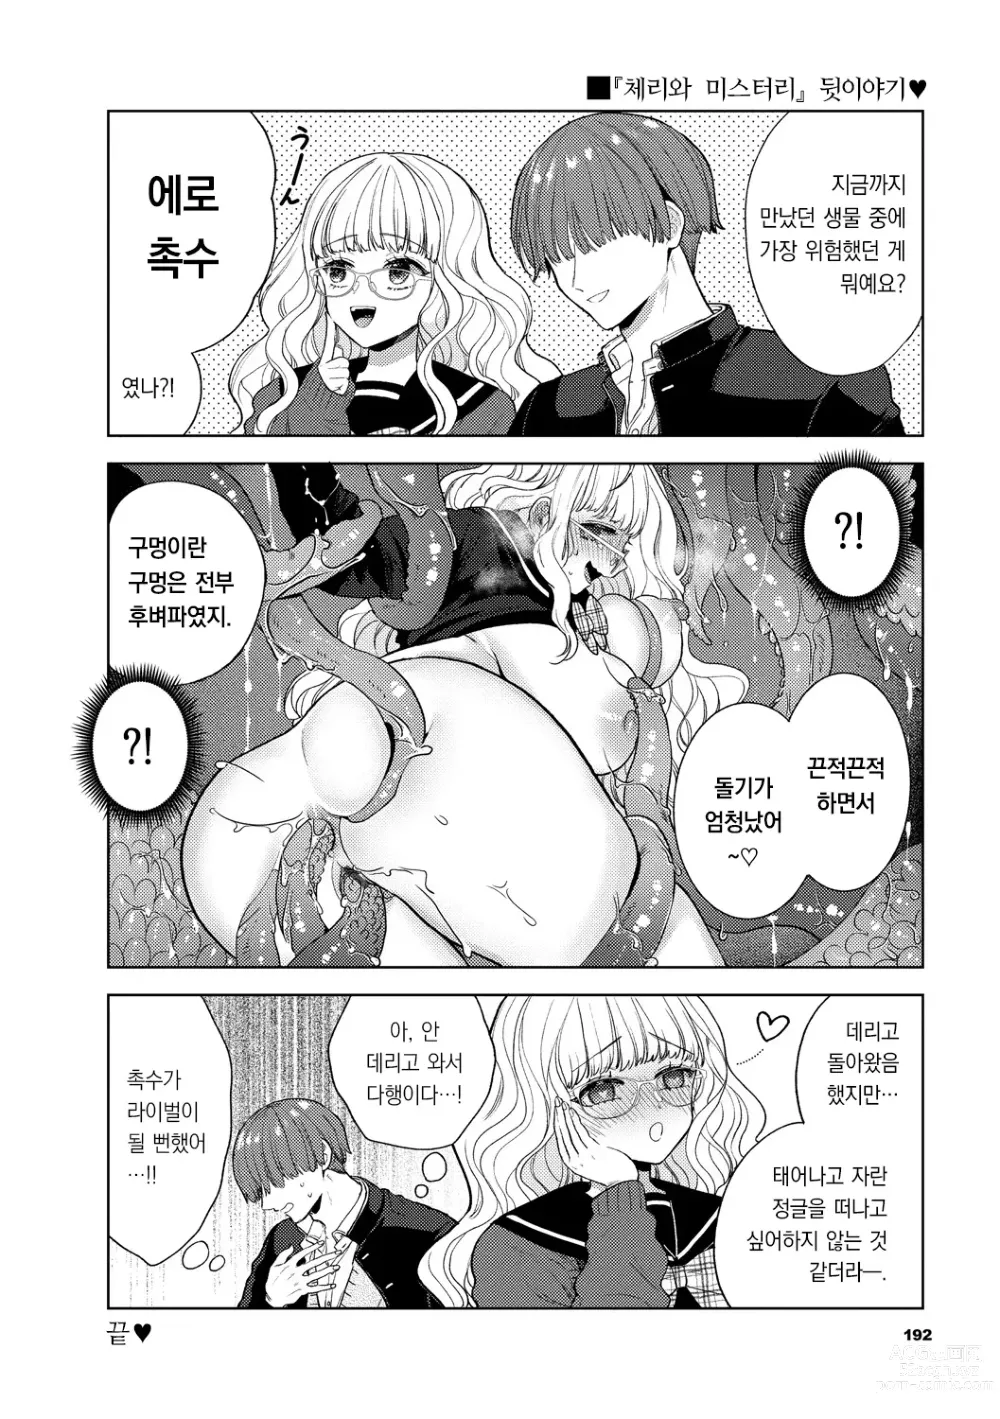 Page 193 of manga 가시